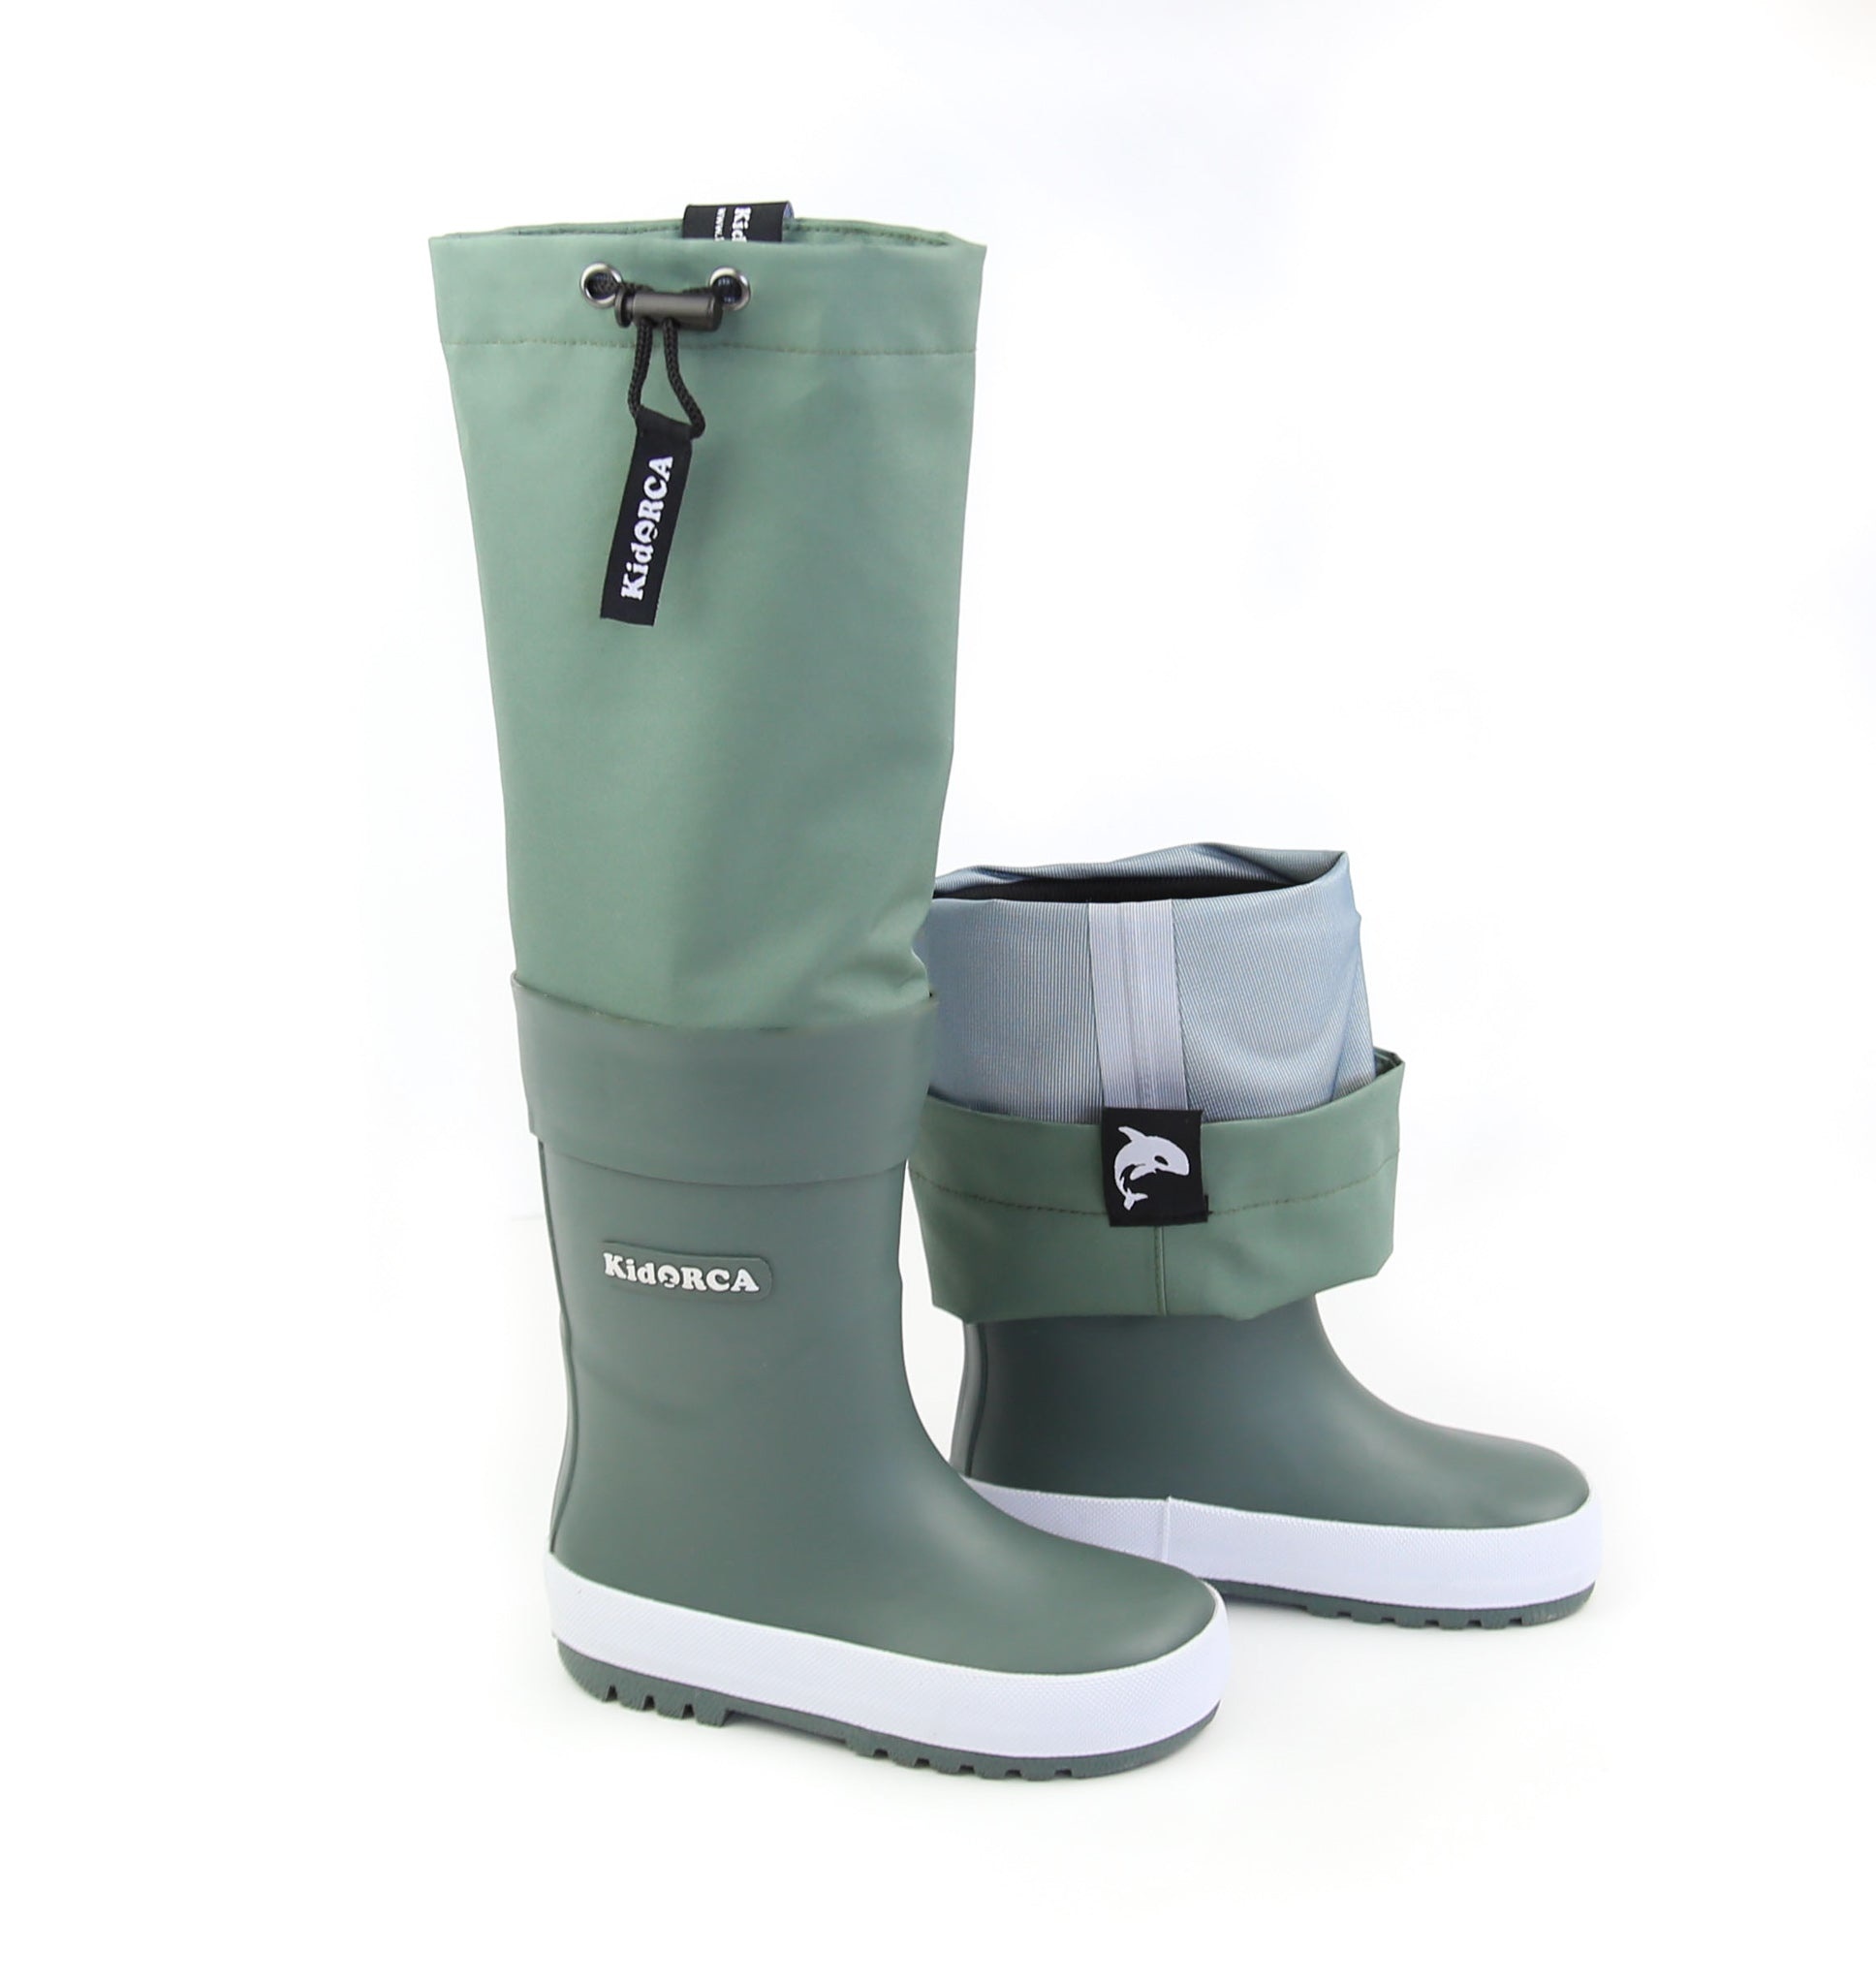 Onderzoek Volgen klimaat KidORCA Kids Rain Boots with Above Knee Waders - HipBabyGear